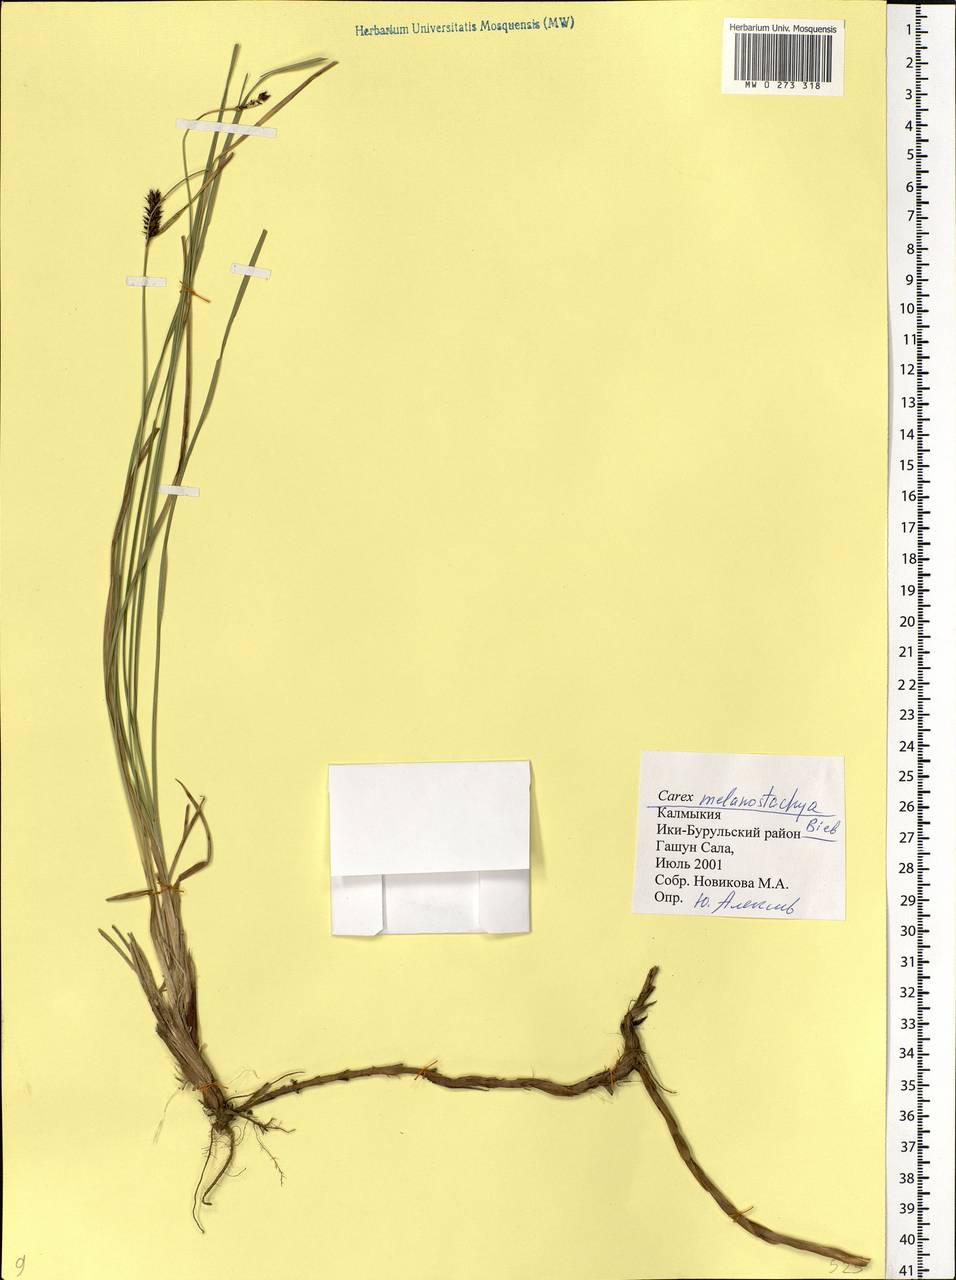 Осока черноколосая M.Bieb. ex Willd., Восточная Европа, Нижневолжский район (E9) (Россия)